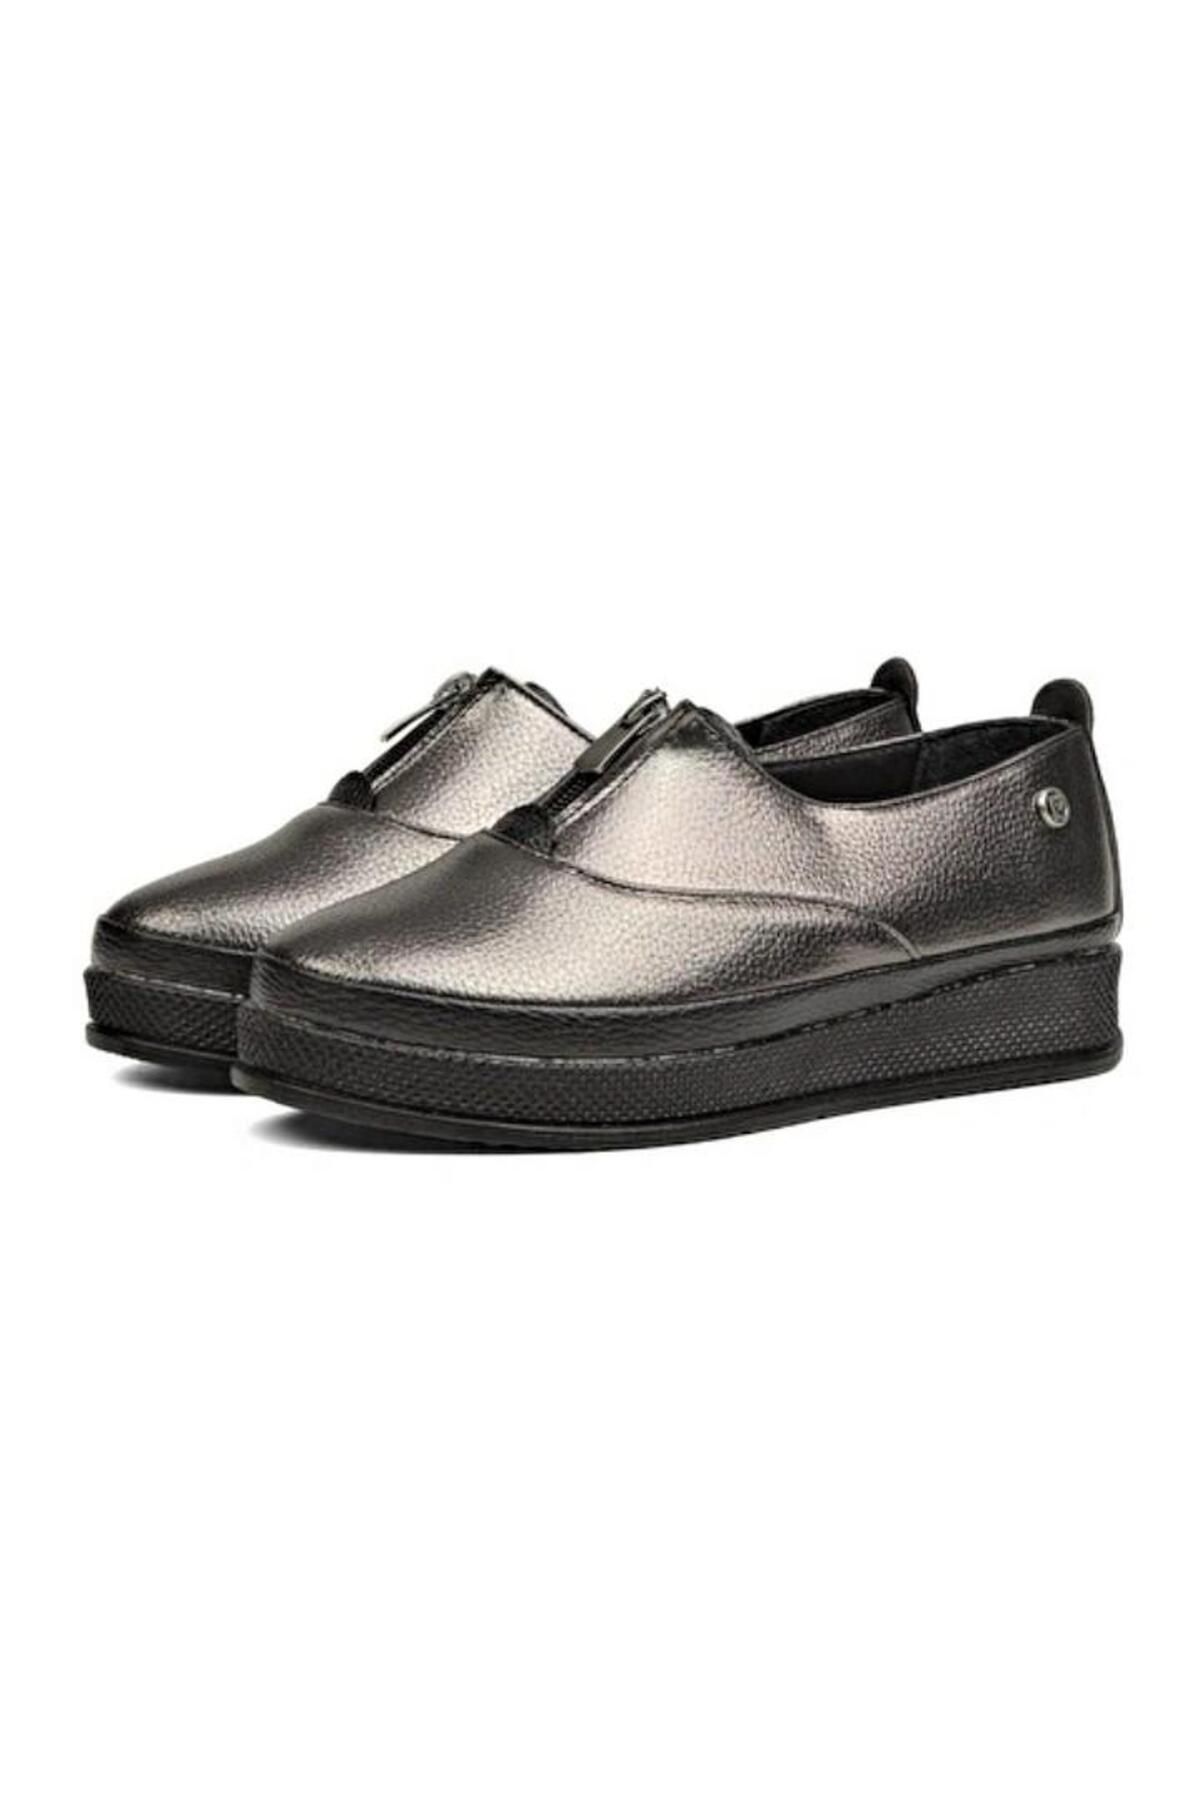 Pierre Cardin Pc51921 Kadın Günlük Fermuarlı Comfort Ayakkabı